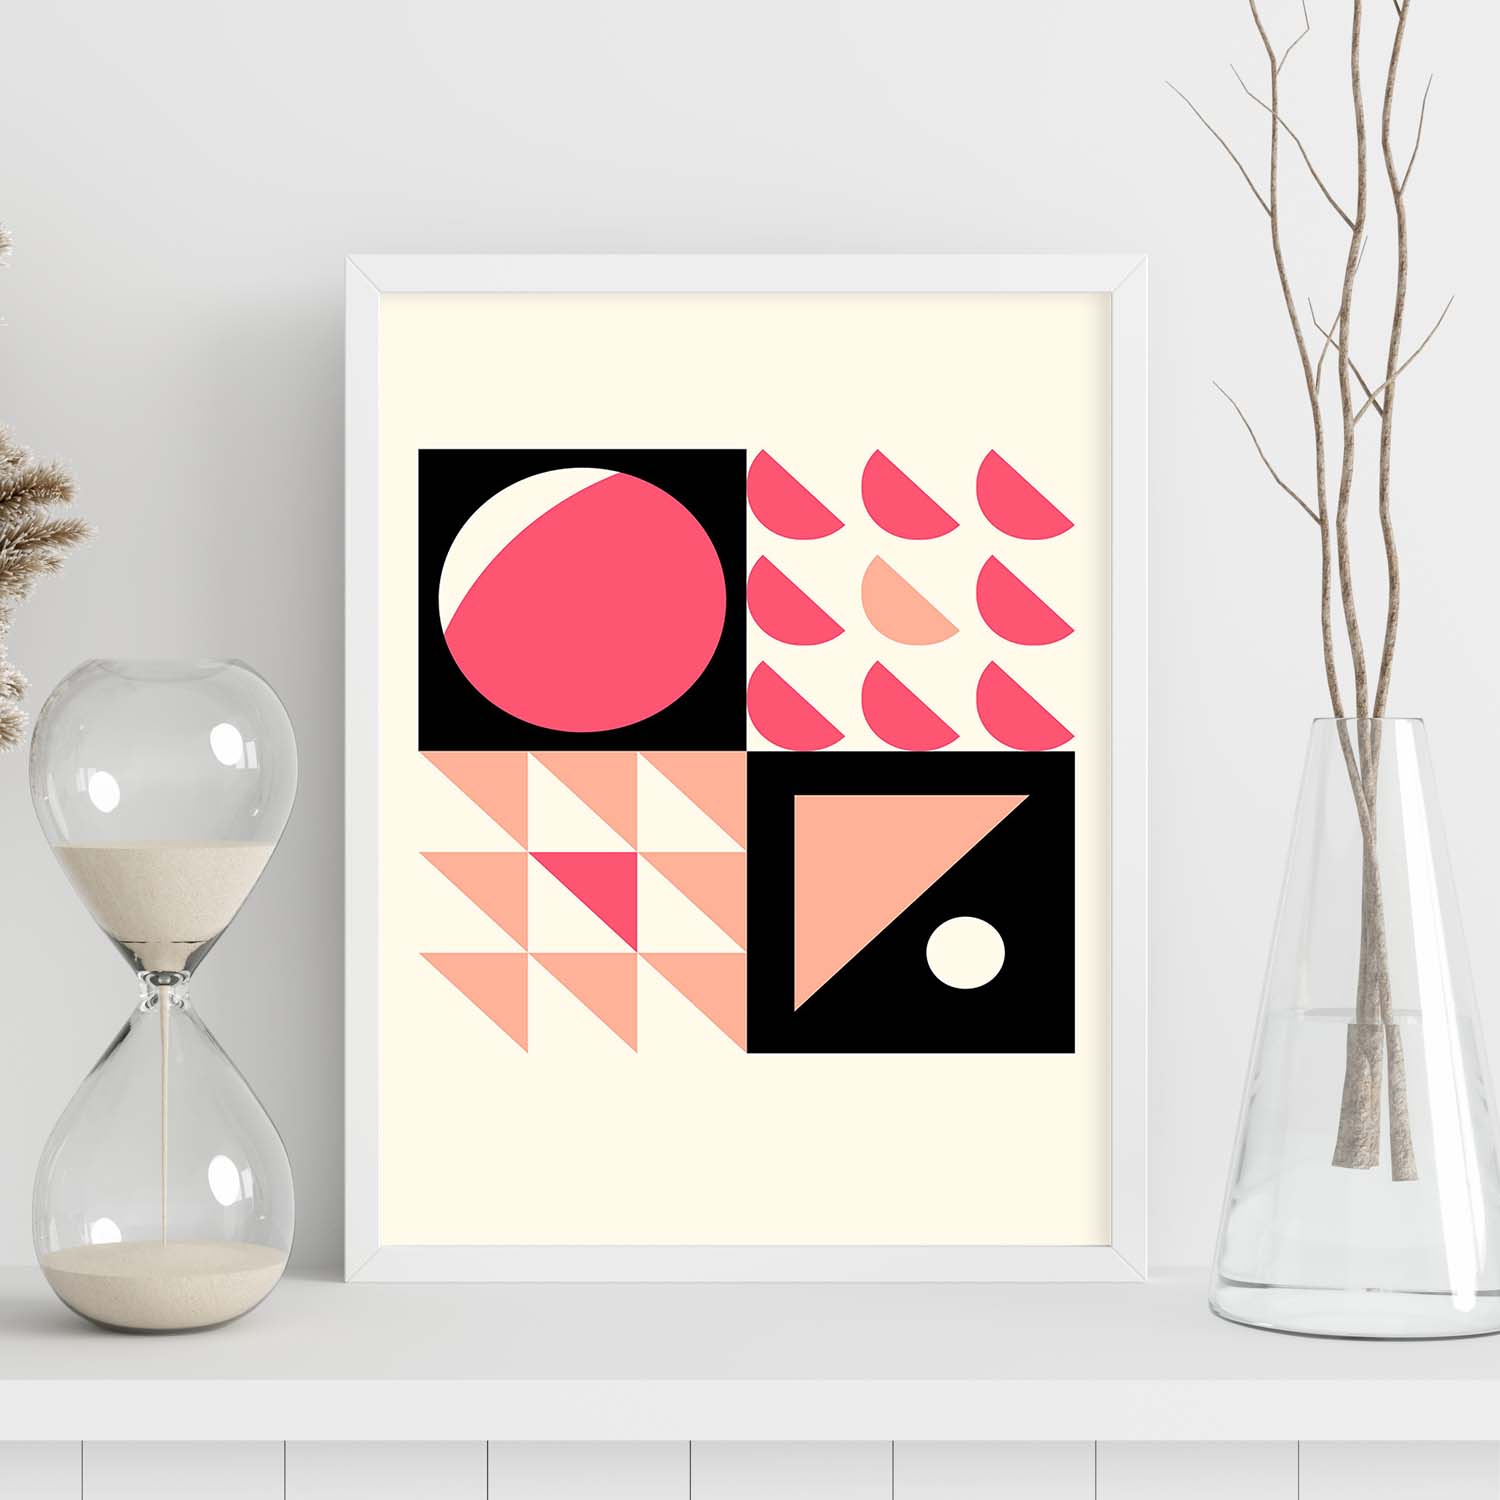 Lámina Rosa 2. Pósters con ilustraciones abstractas en estilo geométrico. Tonos rosados y pastel.-Artwork-Nacnic-Nacnic Estudio SL